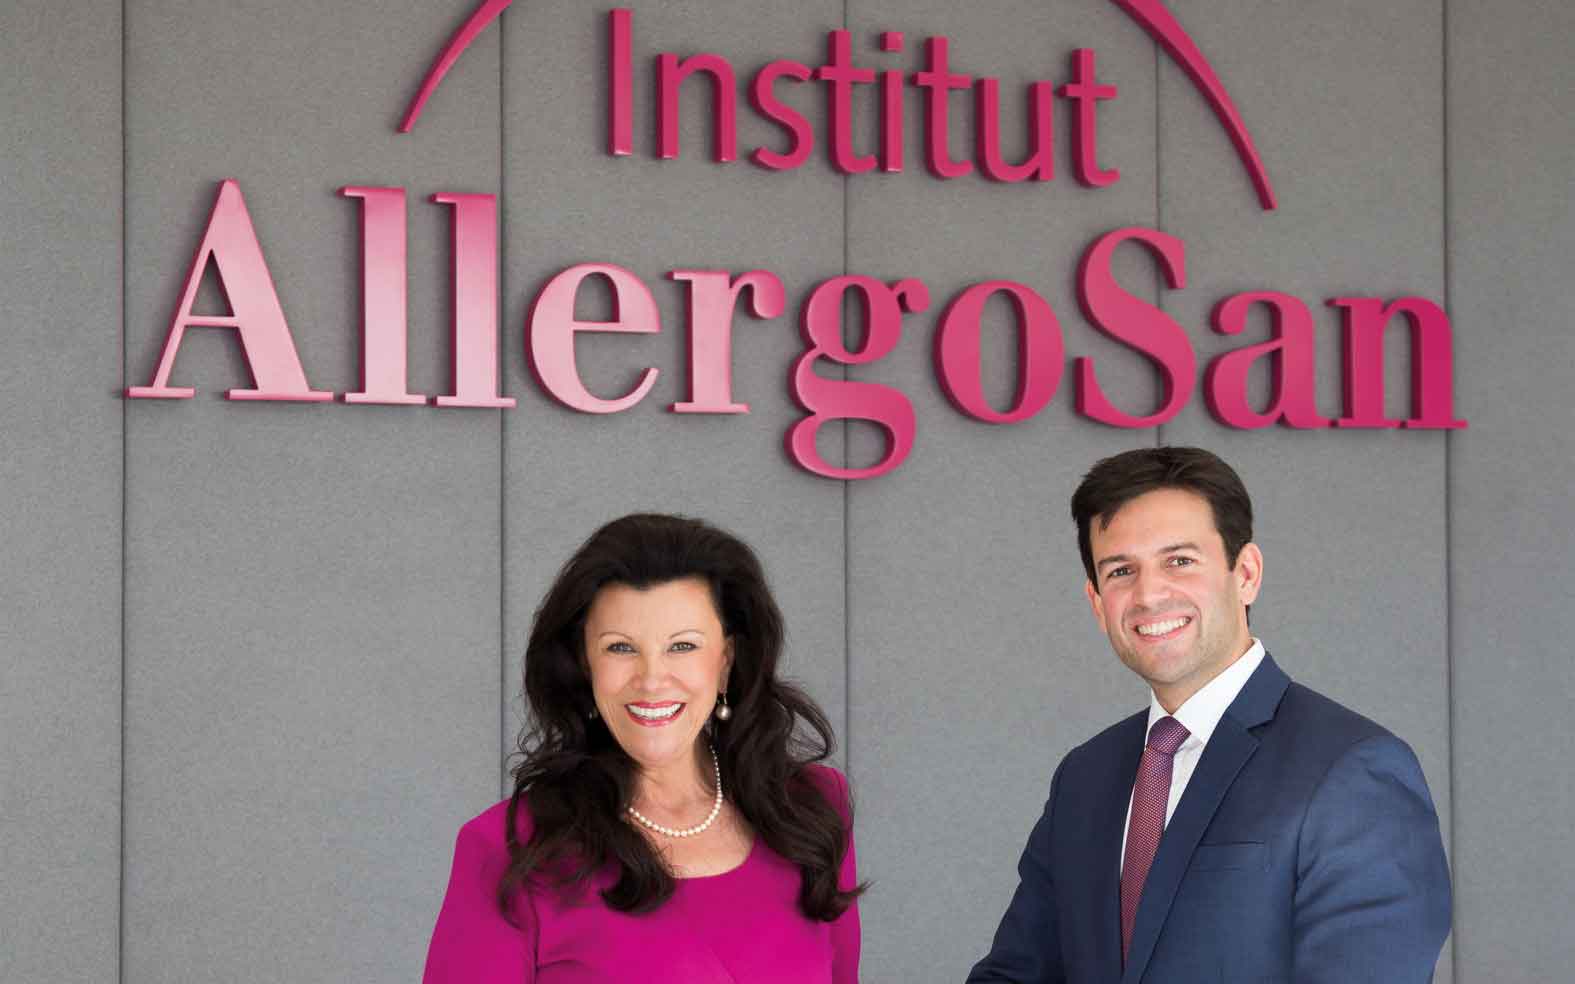 Mag. Anita Frauwallner, Gründerin und Geschäftsführerin des Instituts AllergoSan und ihr Sohn Mag. Bernd Assinger, der Teil der Geschäftsführung des Instituts ist.